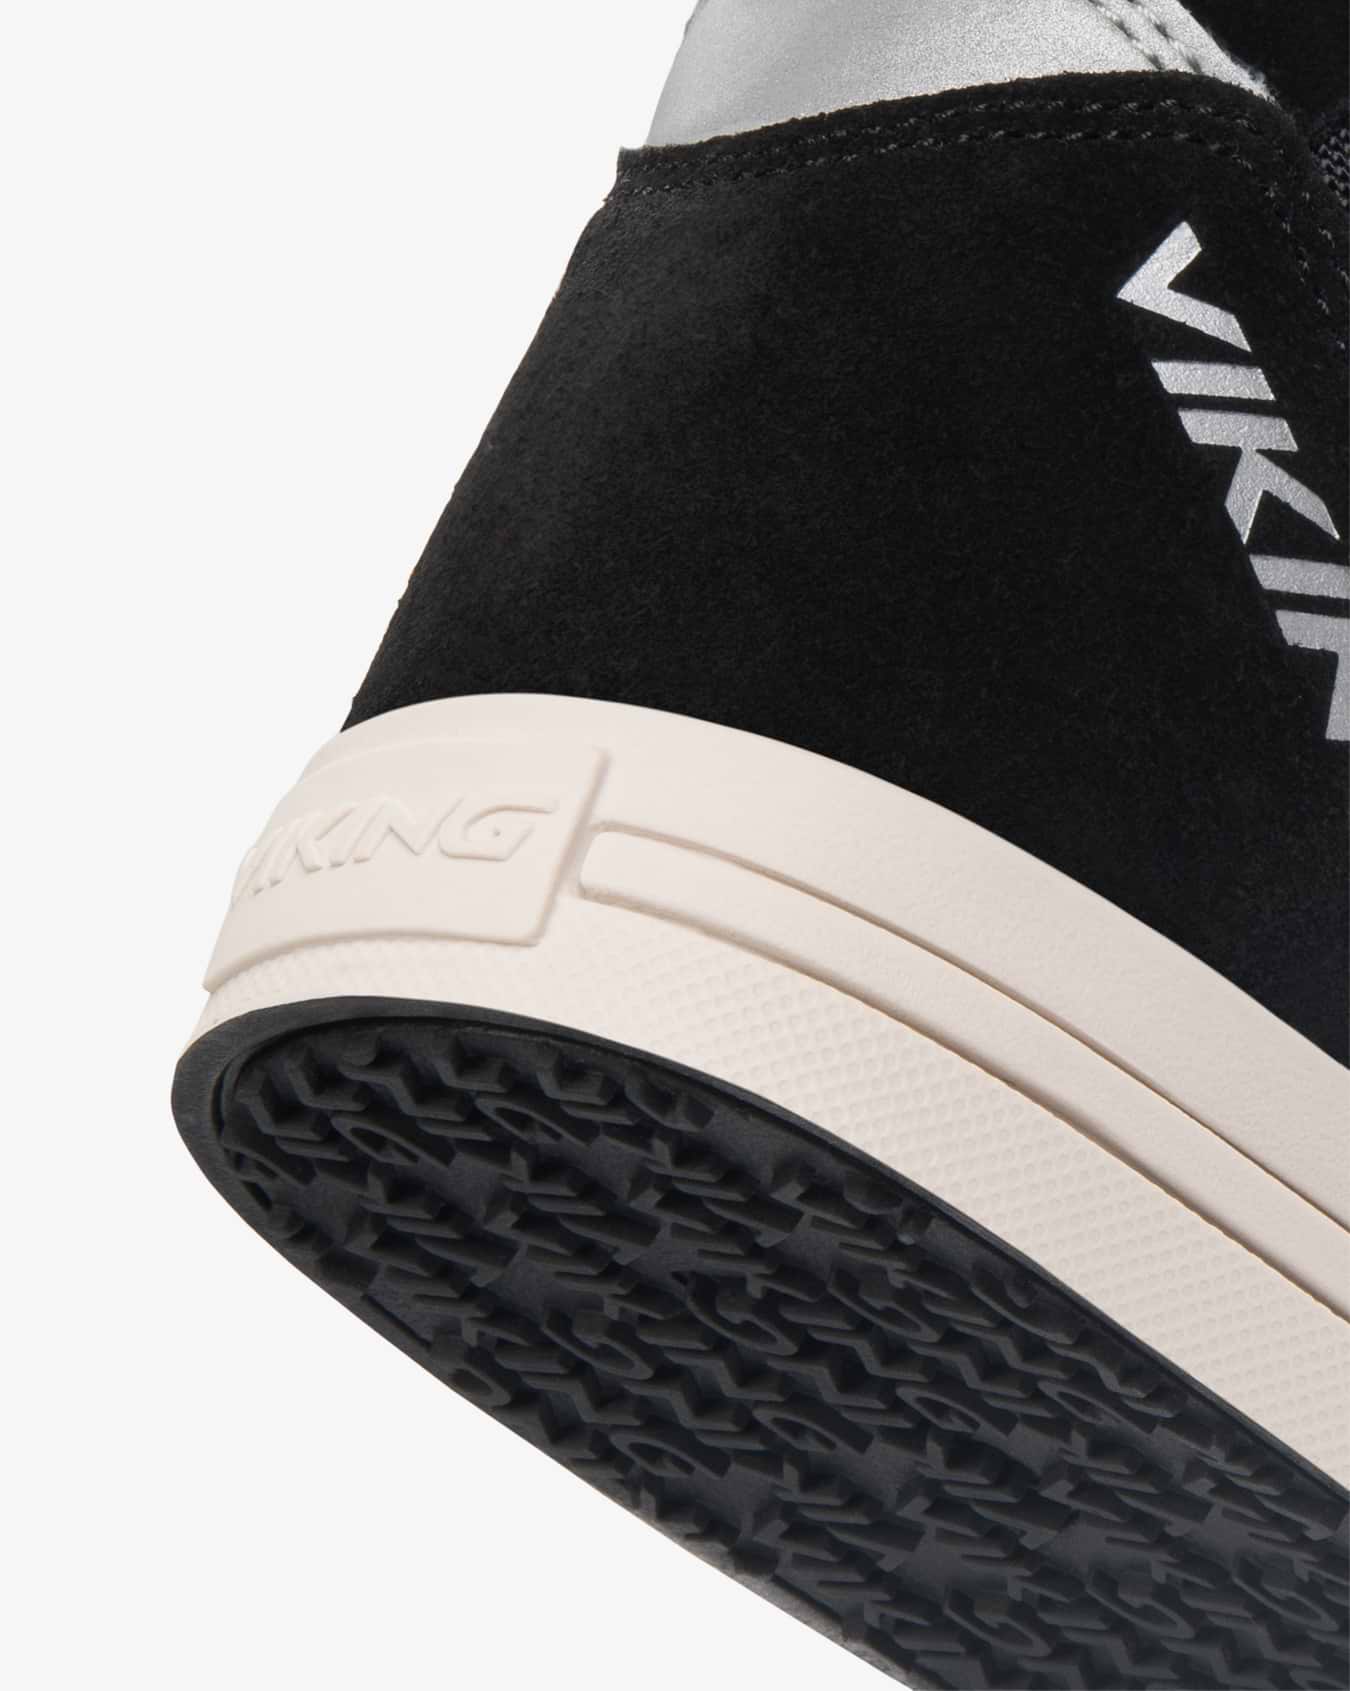 Viking Zing Jr Sneaker Black Waterproof Insulated Velcro